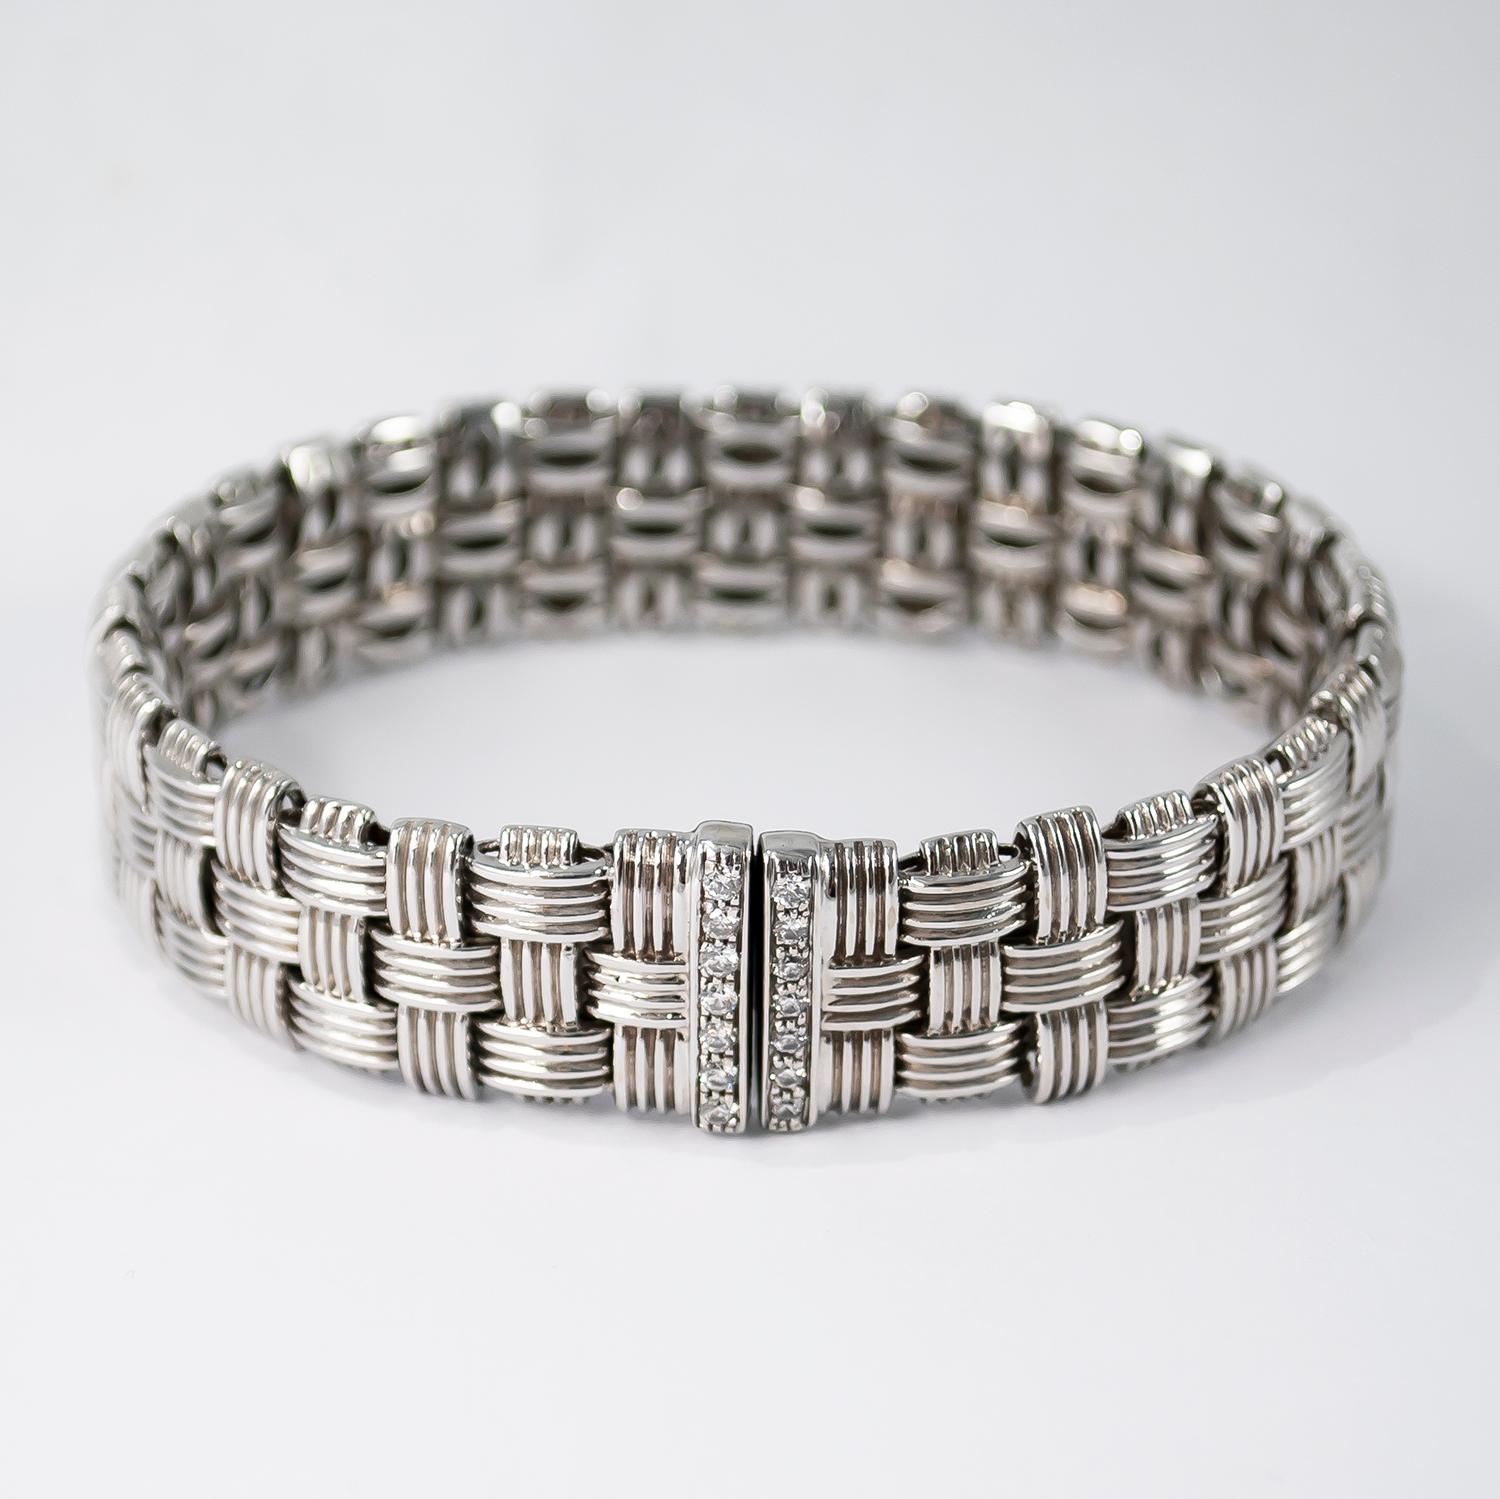 Roberto Coin Appassionata Three-Row Bracelet with Diamonds für Damen oder Herren